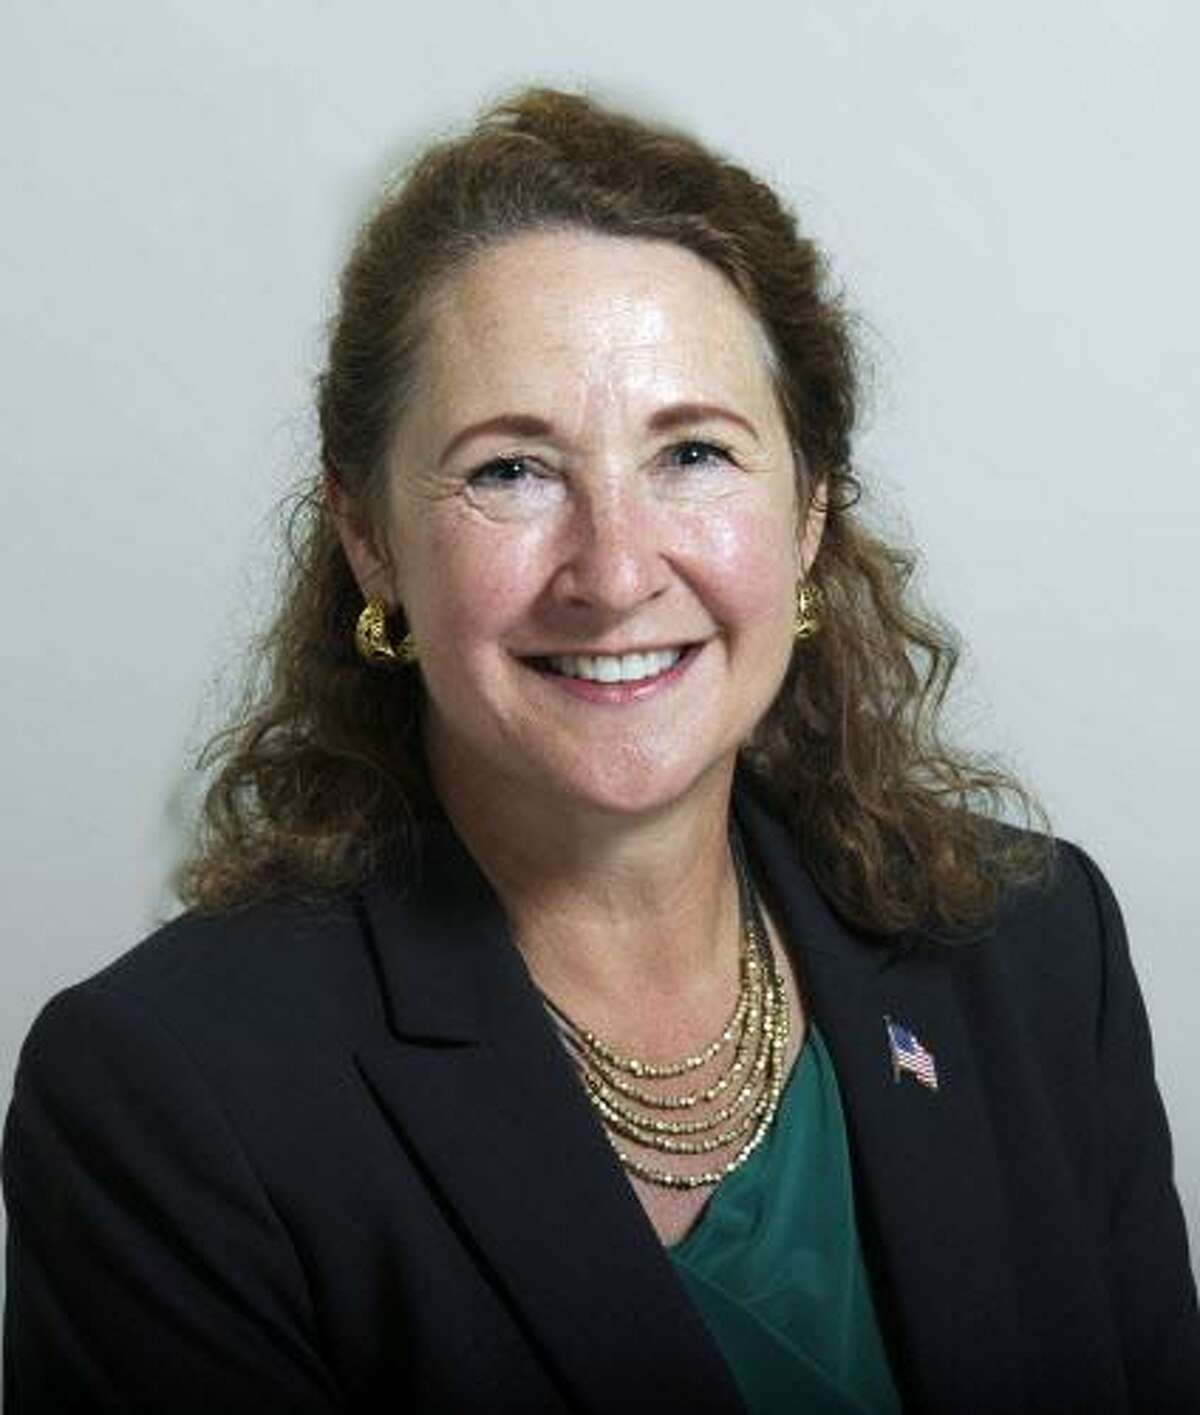 U.S. Rep. Elizabeth Esty